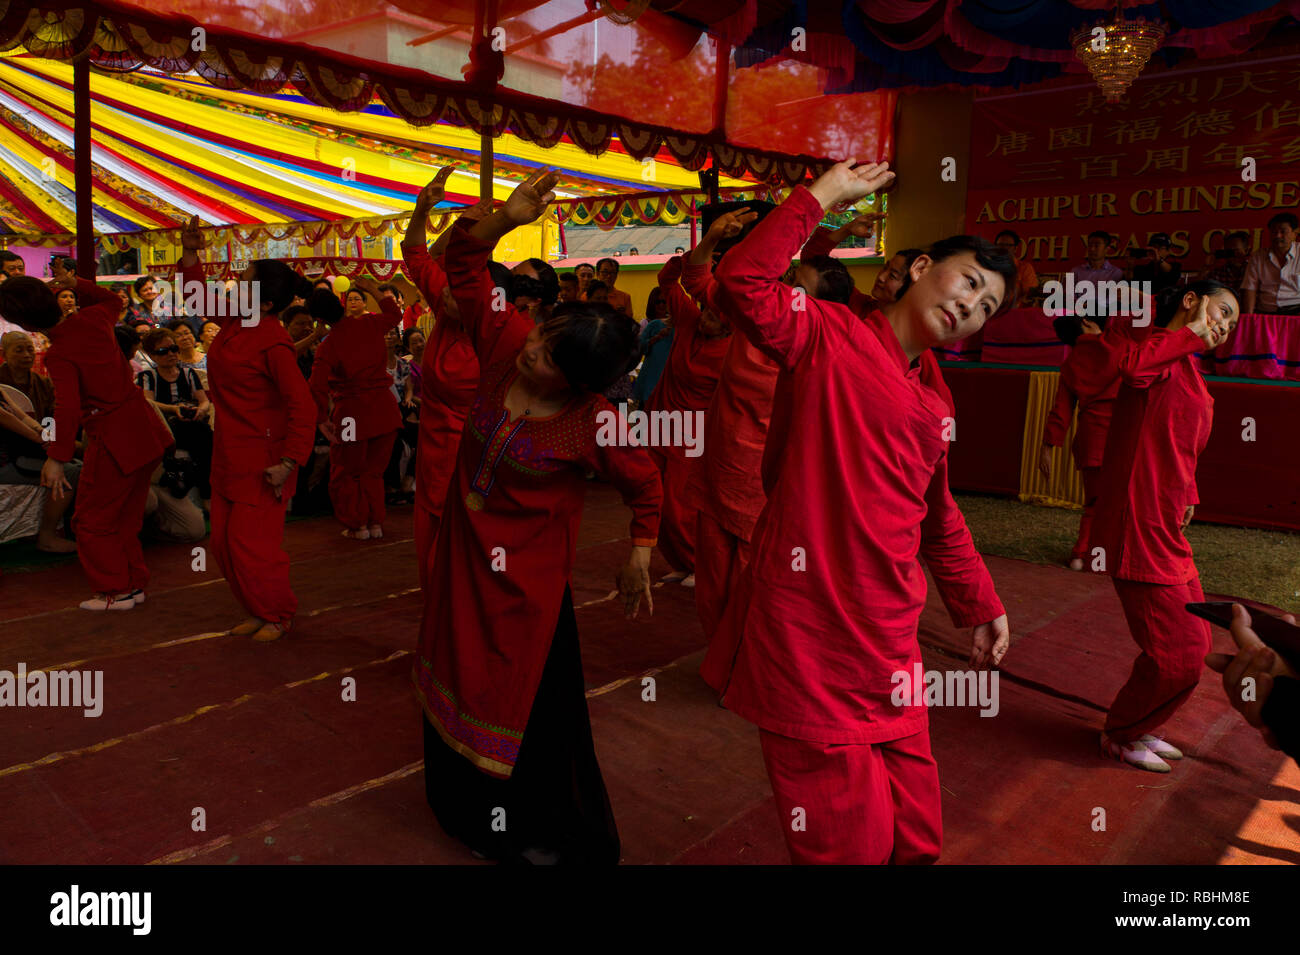 Chinesische Tänzer einen traditionellen Tanz zu 300 Jahre eines chinesischen Tempel in Achipur in der Nähe von Kolkata in Westbengalen. Stockfoto